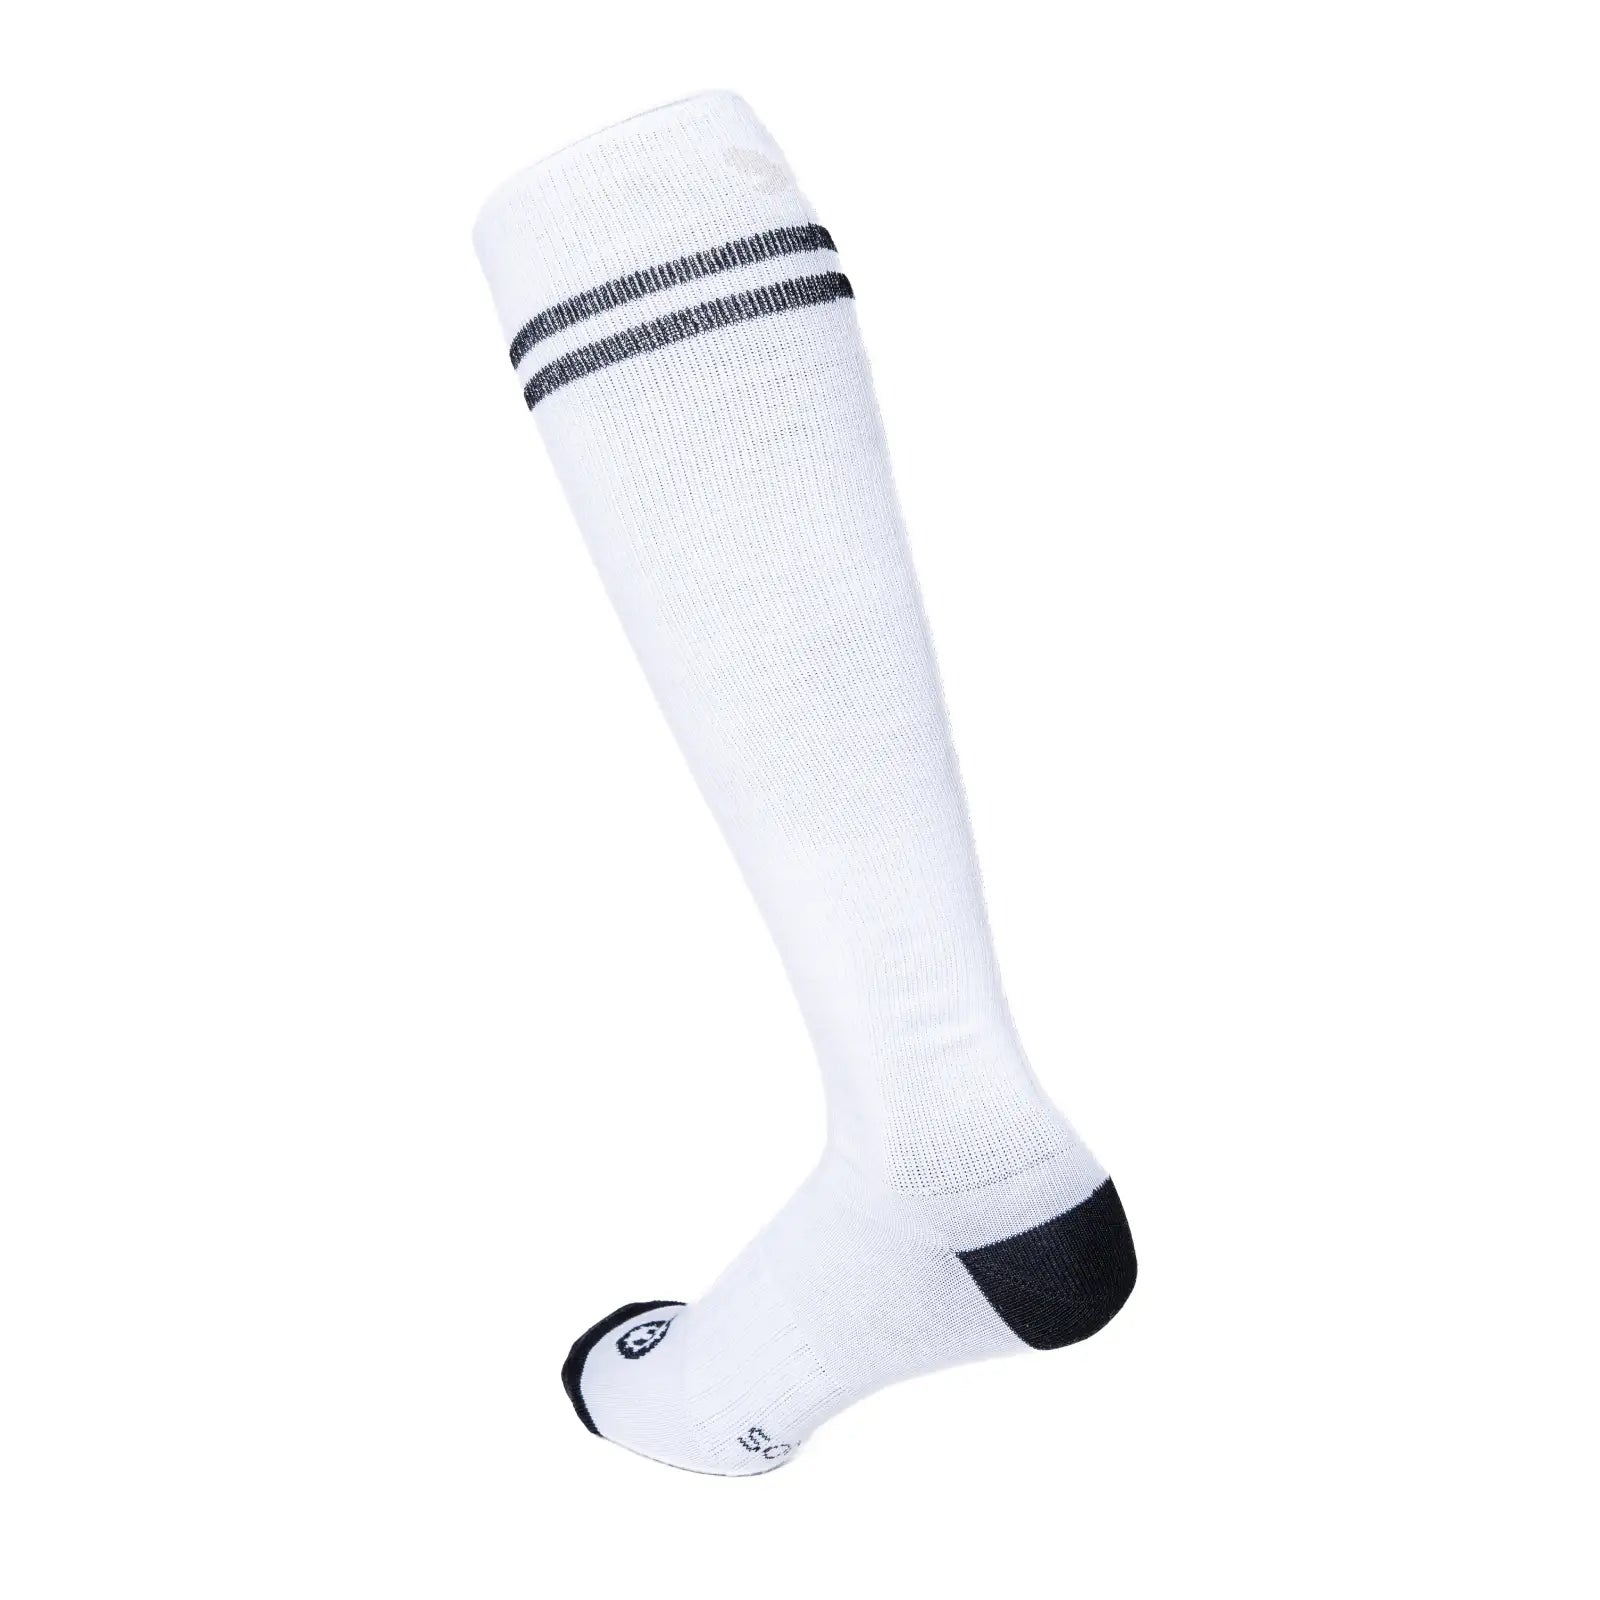 Calcetines altos retro de compresión ligera. color blanco con 2 rayas negra